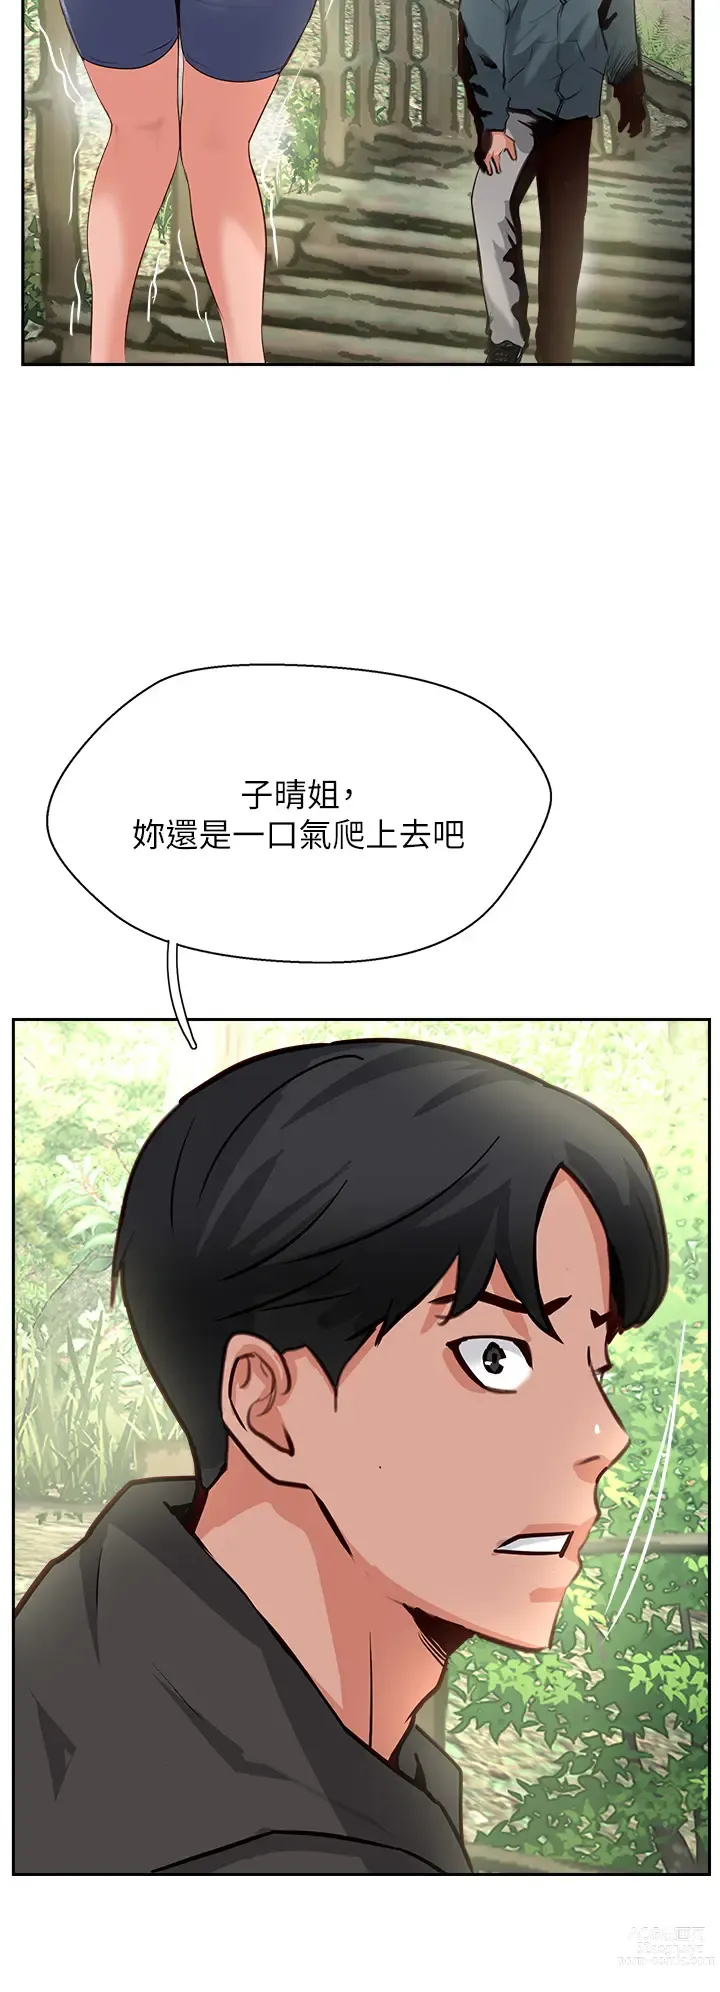 Page 14 of manga 攻顶传教士 32-51 完结 中文无水印